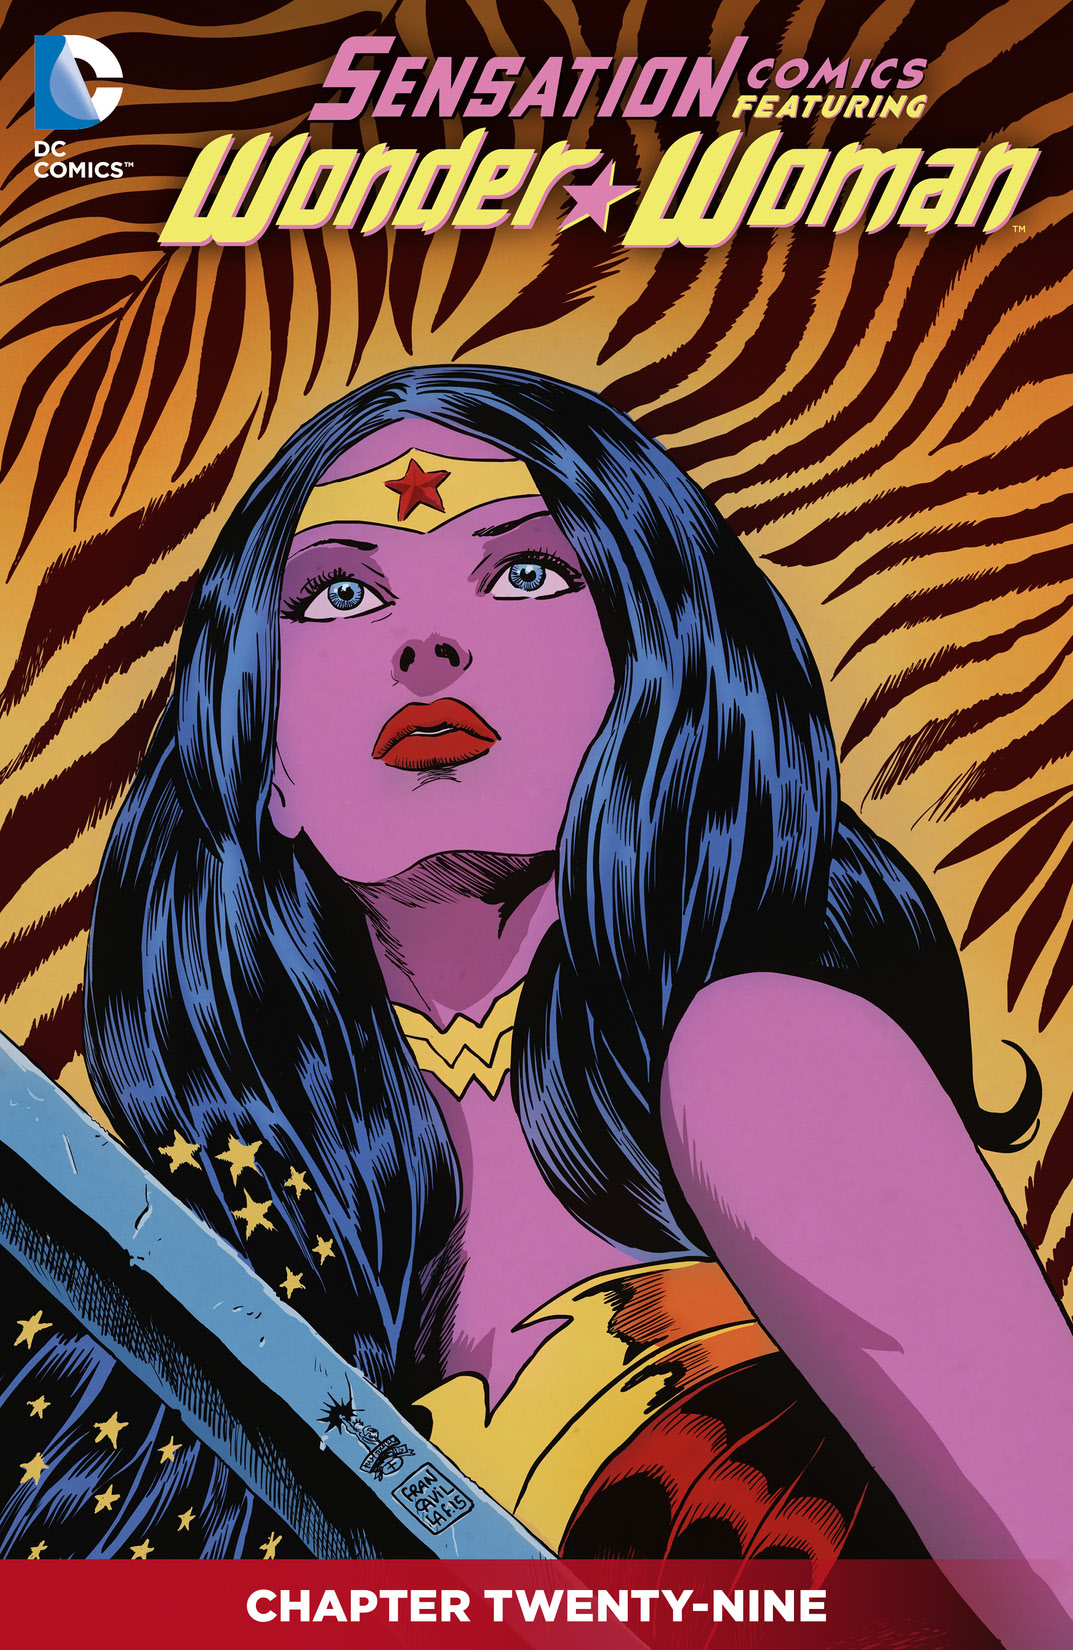 Sensation Comics Featuring Wonder Woman #29 preview images